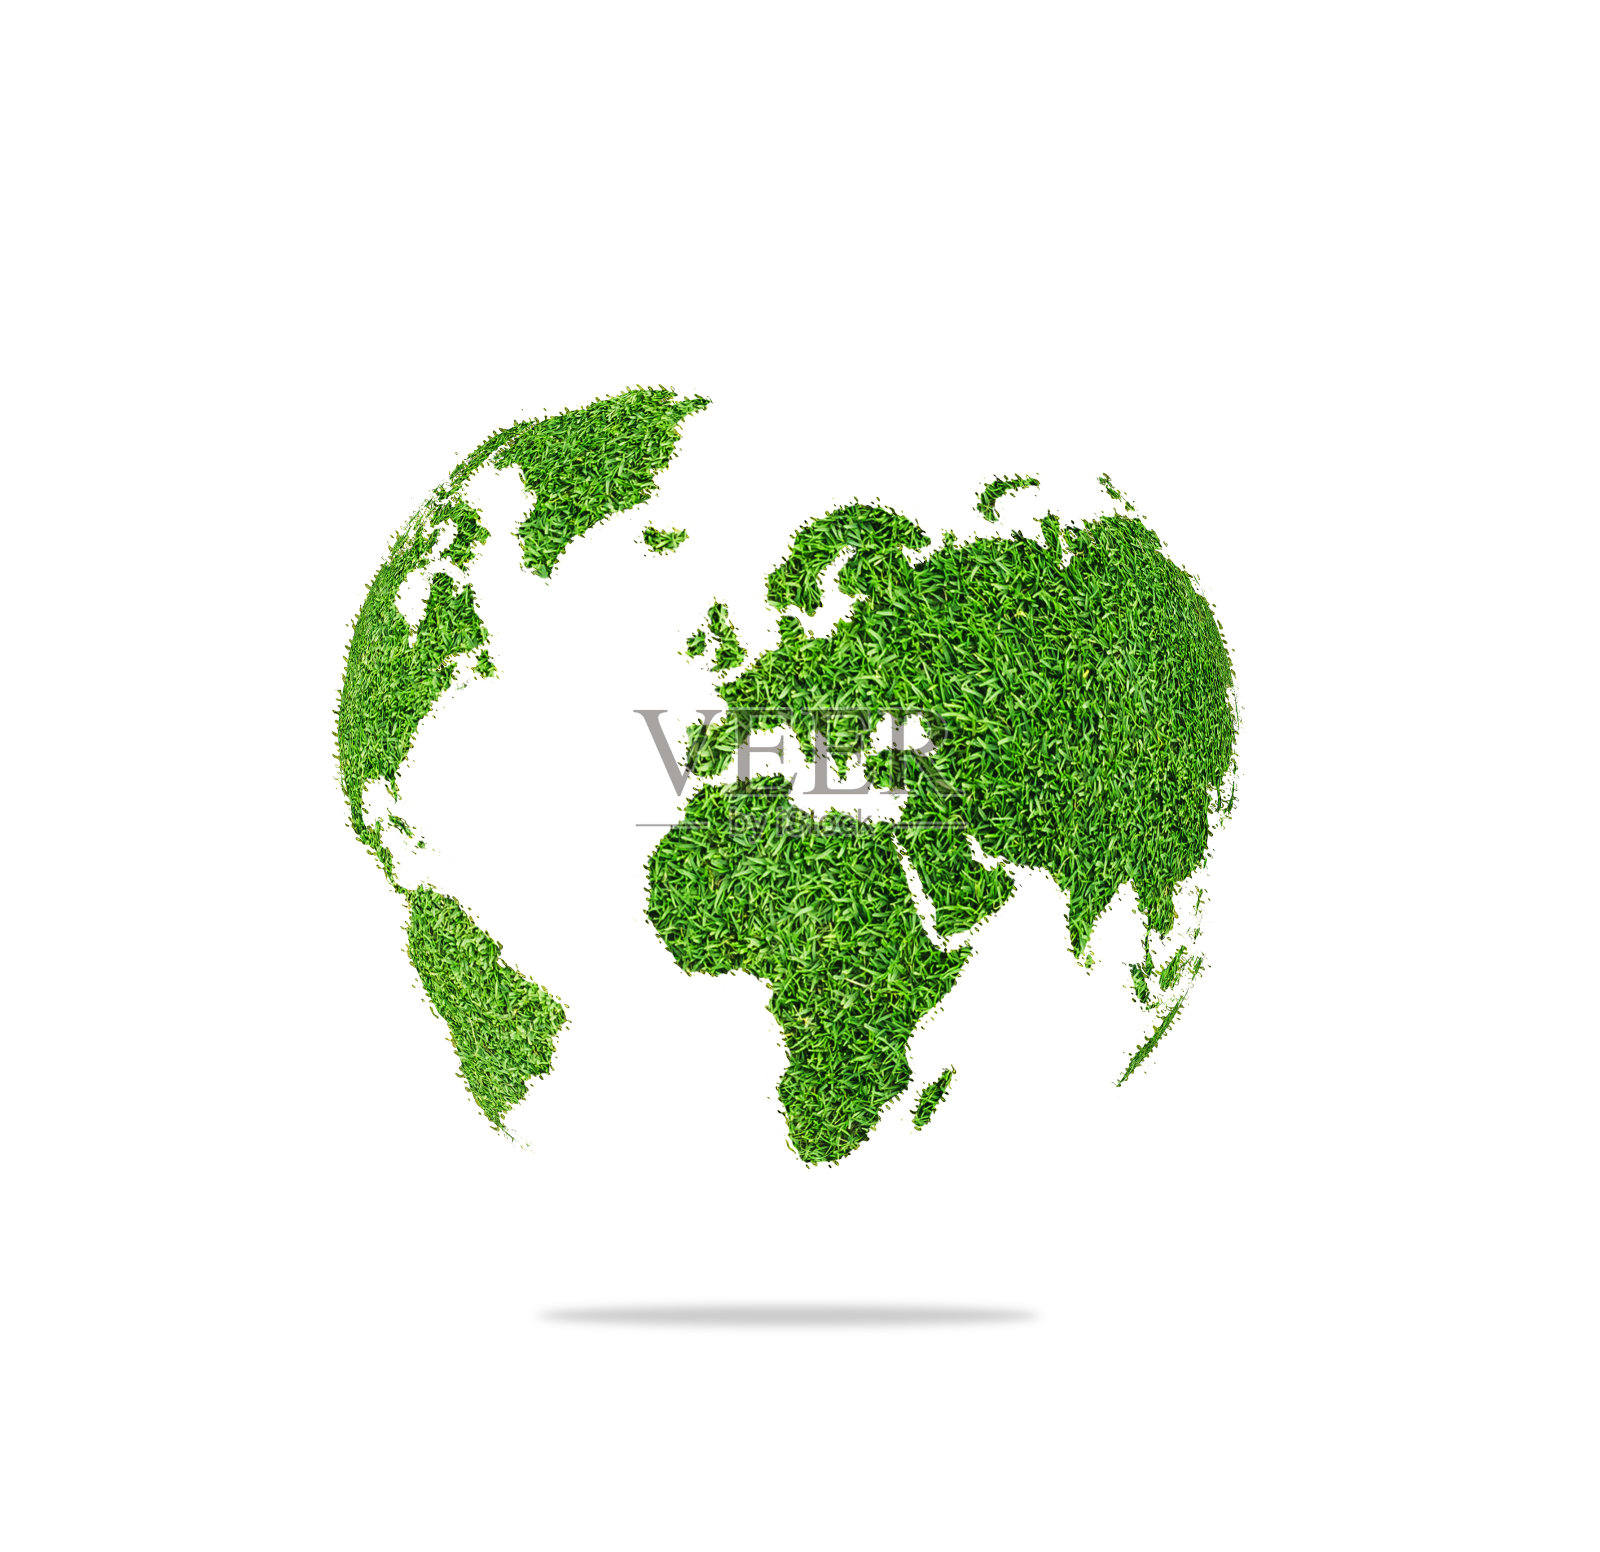 世界地球形状的绿草孤立在白色的背景照片摄影图片